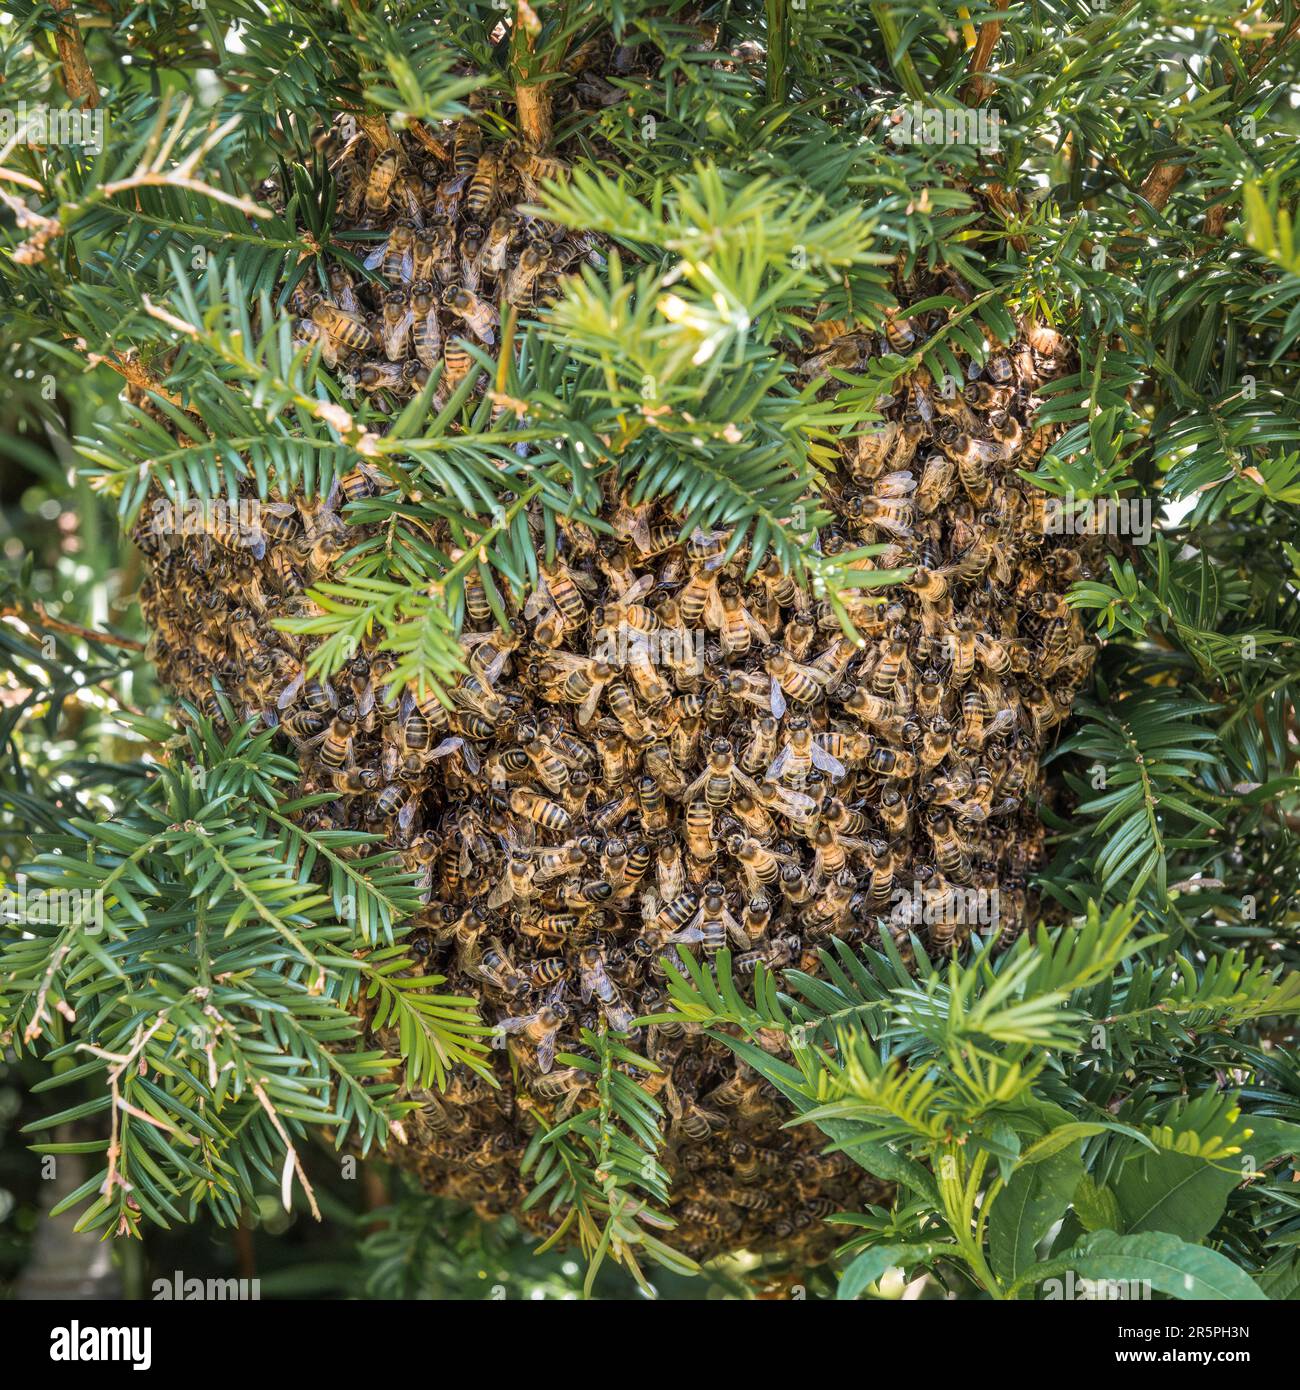 Un essaim d'abeilles domestiques (APIs mellifera) s'est installé dans une haie d'if dans un jardin anglais début juin (Royaume-Uni) Banque D'Images